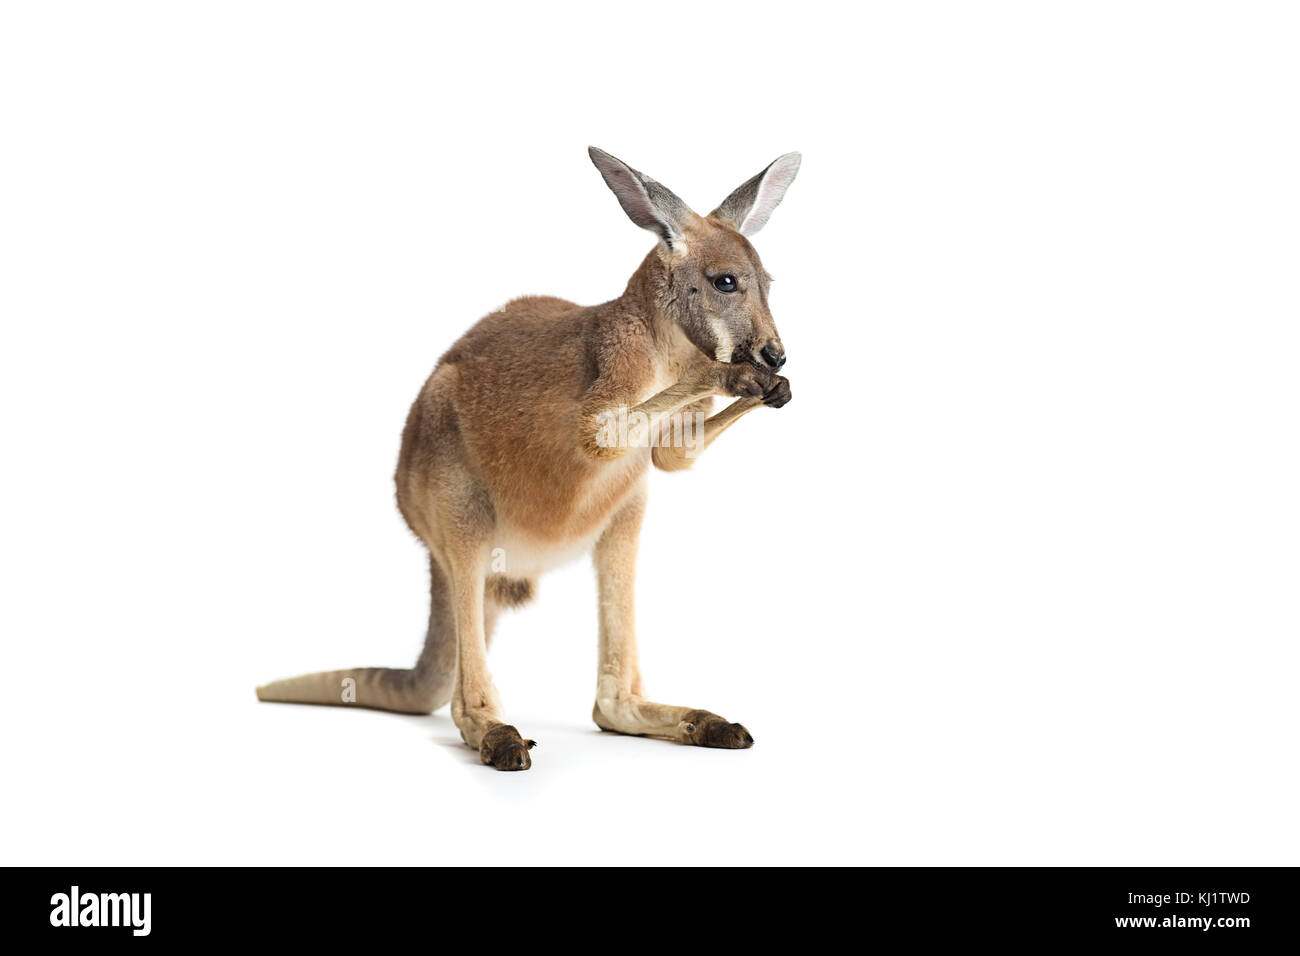 Thử thách của bạn là đi tìm những bức ảnh đẹp nhất về chú kangaroo tại đại lục Úc. Hãy đắm mình trong thế giới động vật vô cùng đa dạng của nó!